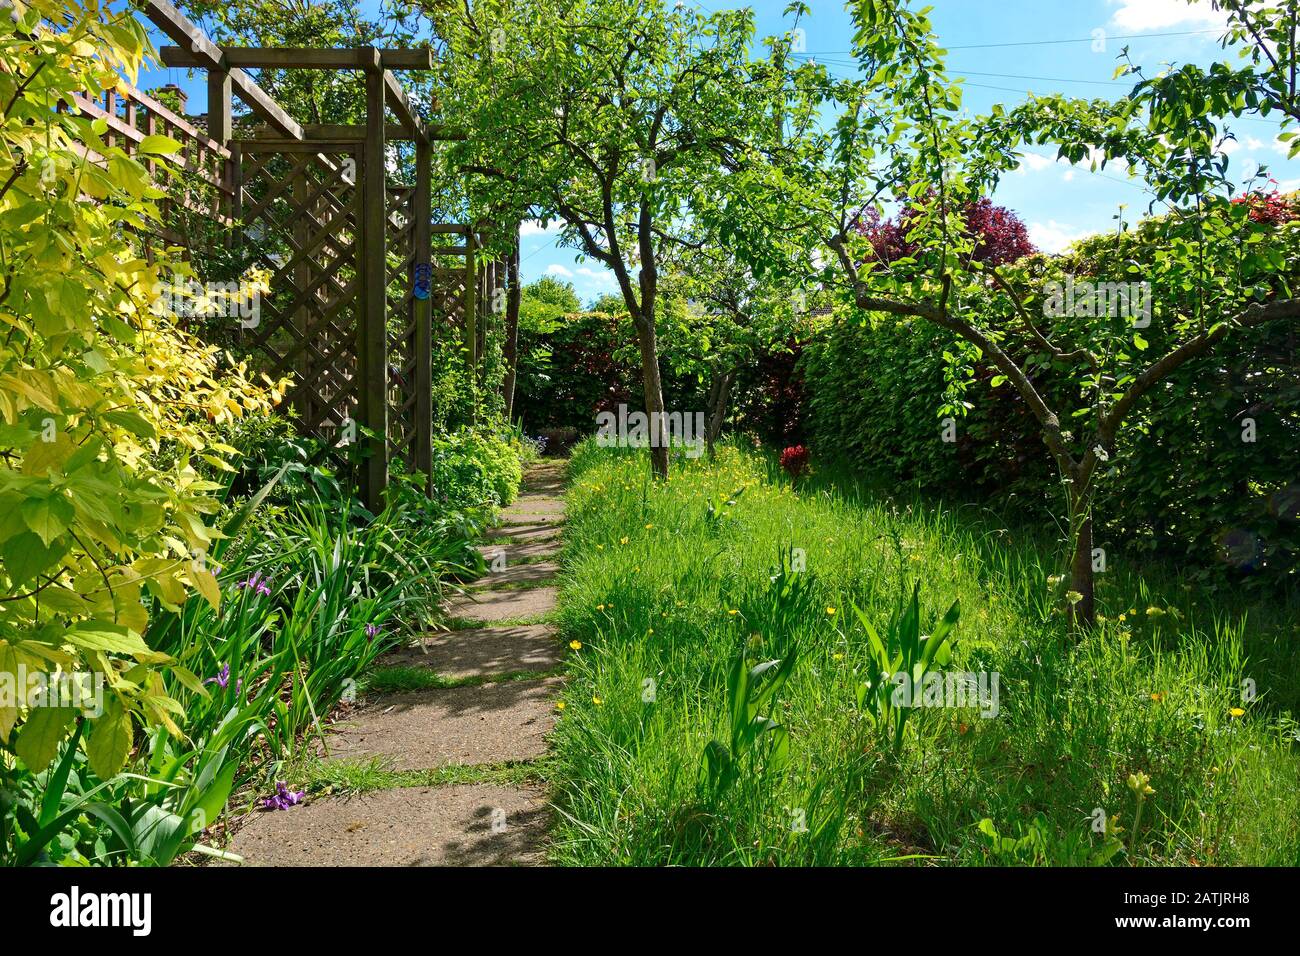 Kleiner Wildgarten mit Bäumen und einer ungeschnittenen Wiese zur Förderung von Insekten. Boughton Monchelsea Village, Kent, England. Stockfoto